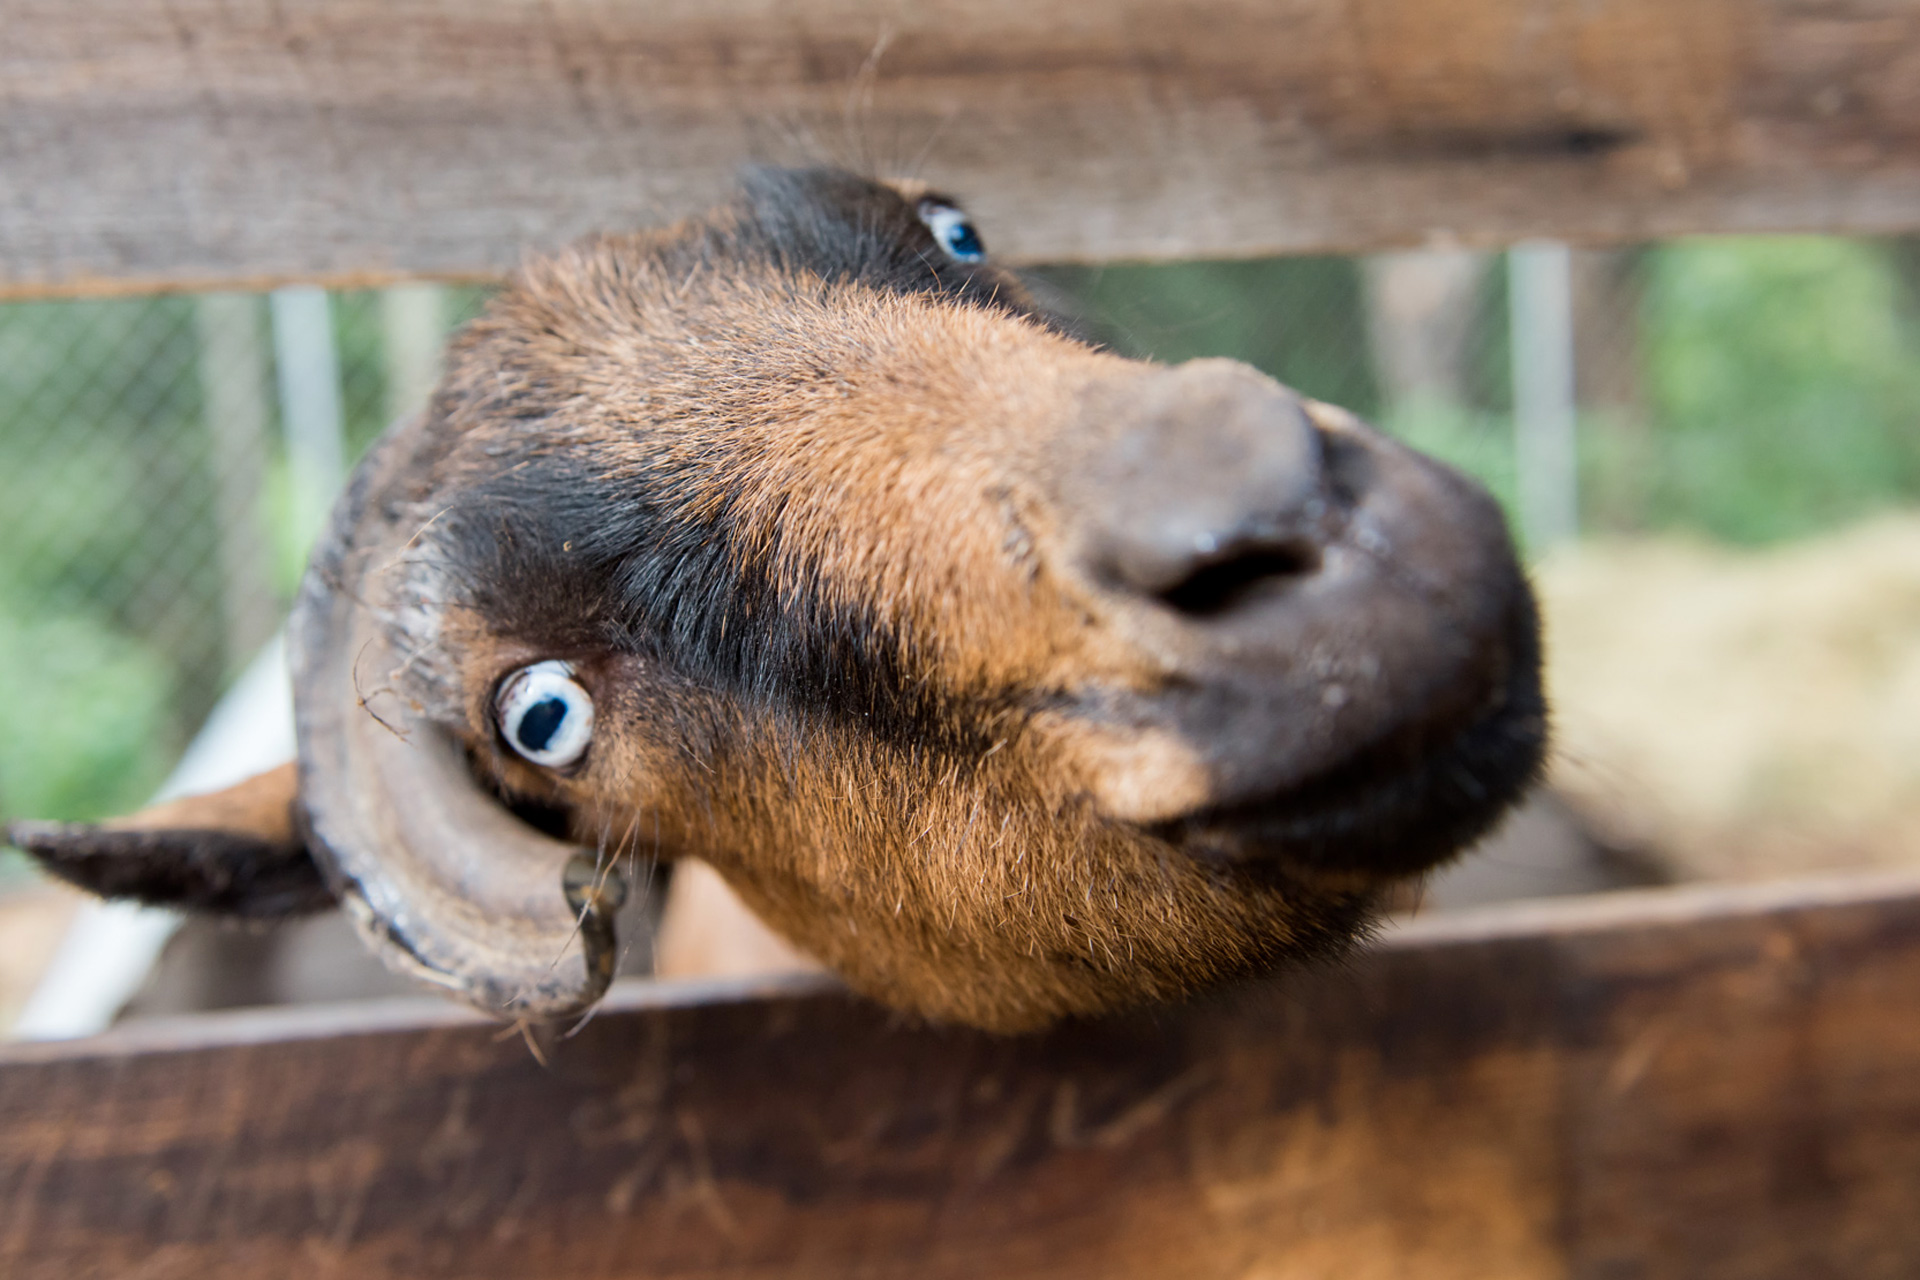 Goat sticks its head sideways through a fence